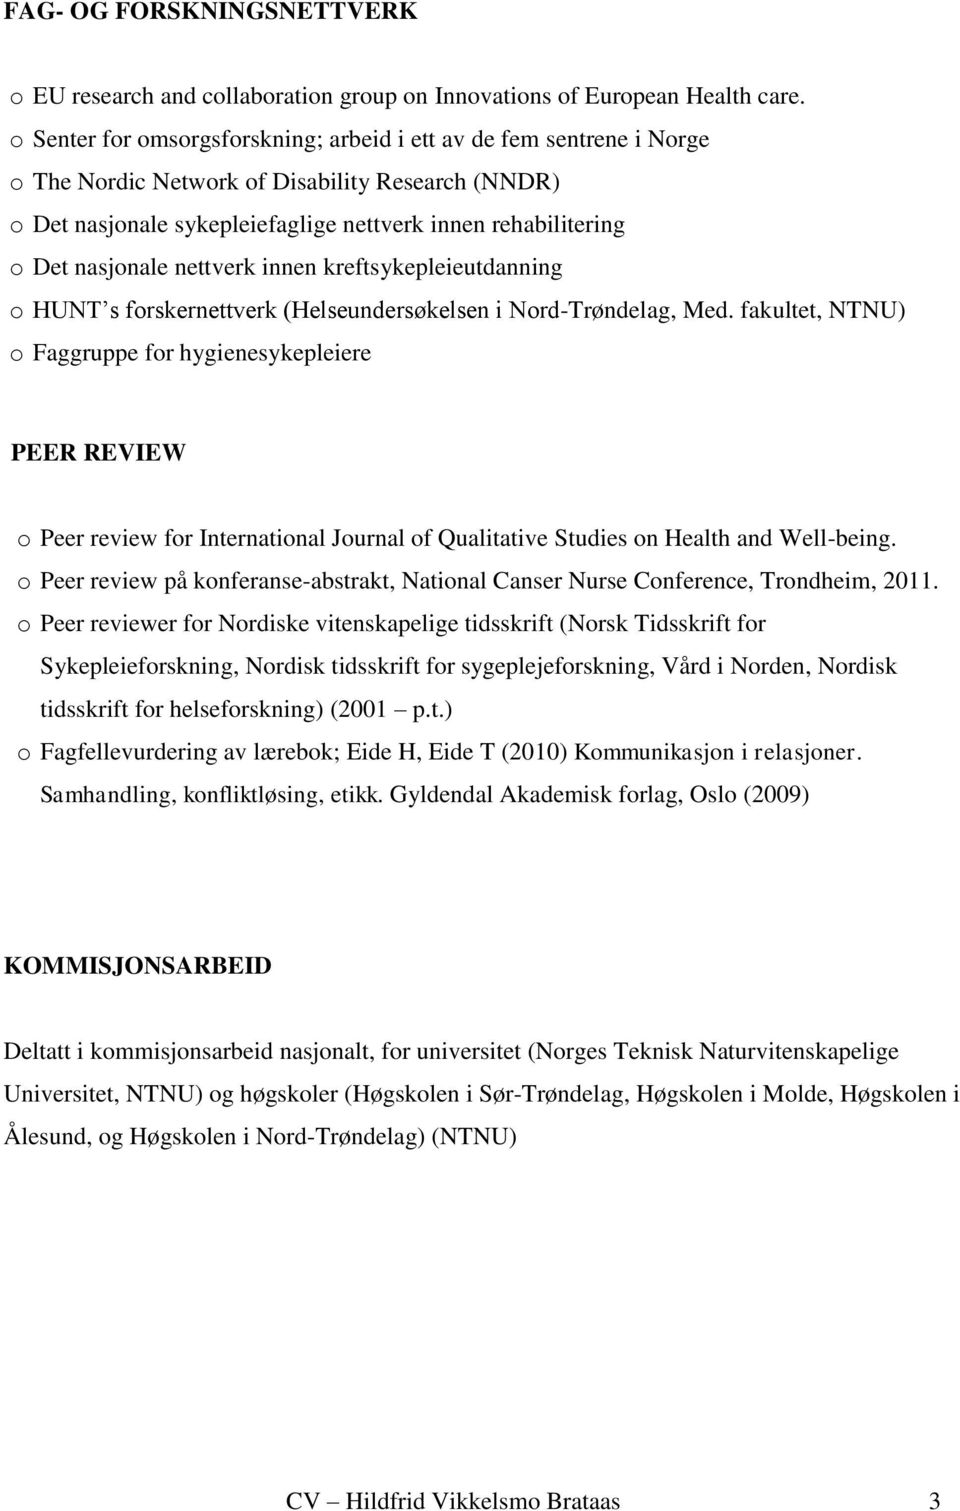 nasjonale nettverk innen kreftsykepleieutdanning o HUNT s forskernettverk (Helseundersøkelsen i Nord-Trøndelag, Med.